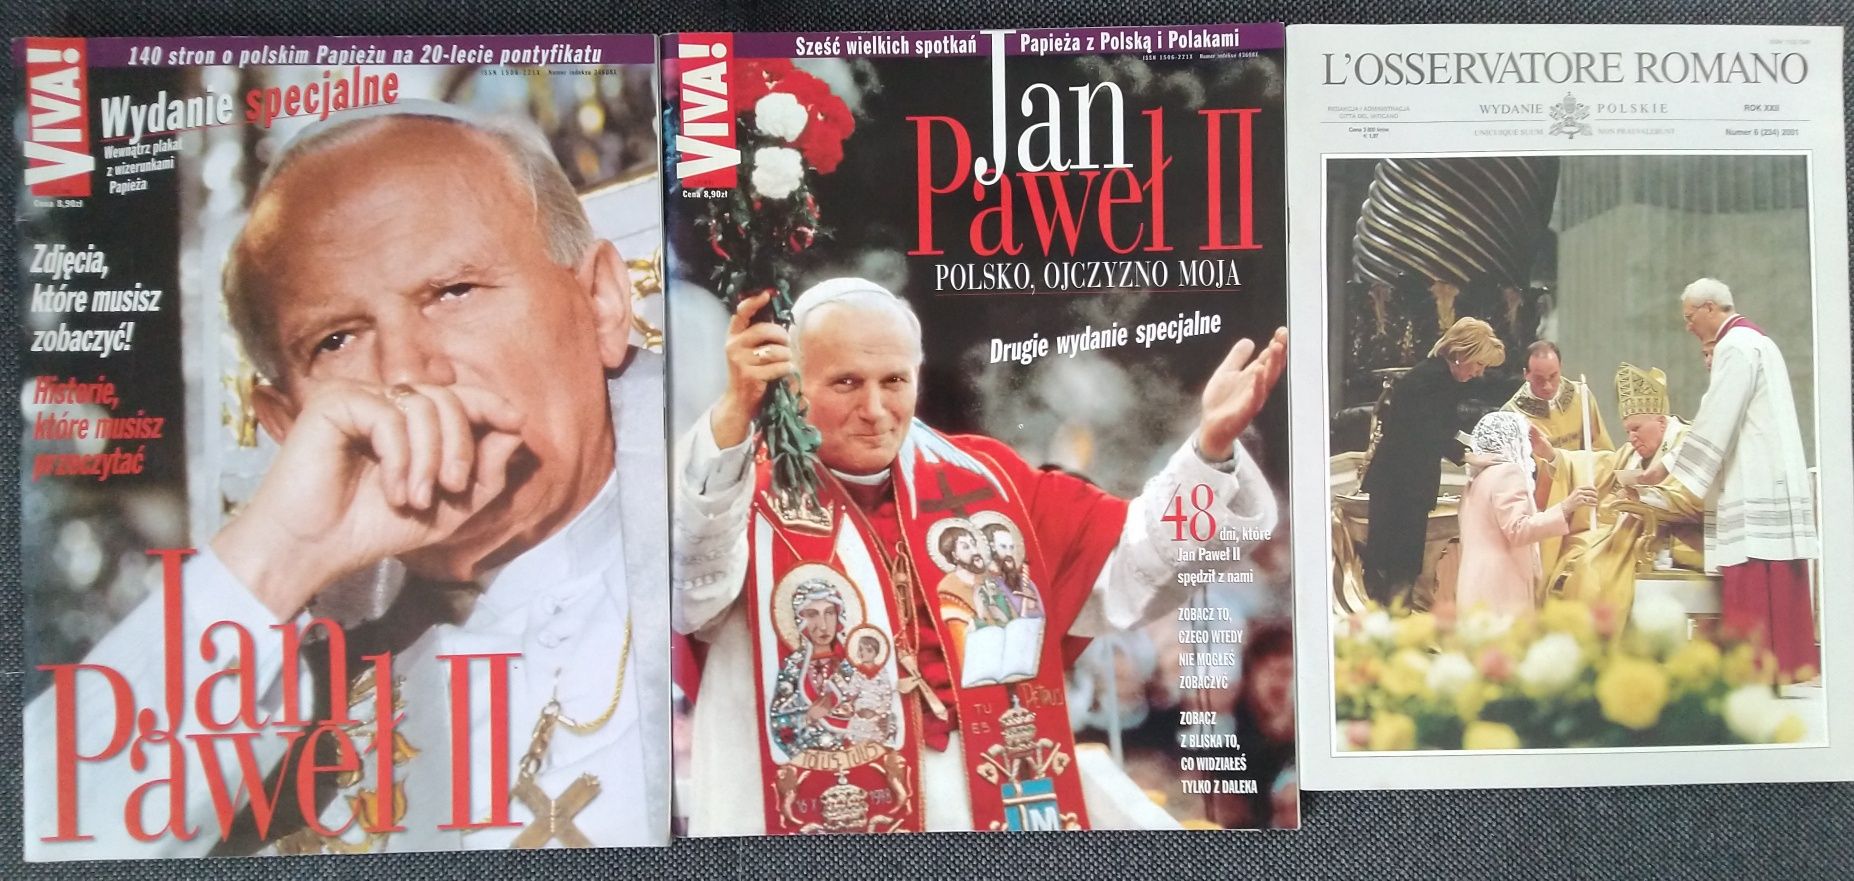 Jan Paweł II - czasopisma, wydania specjalne, tryptyk Rzymski